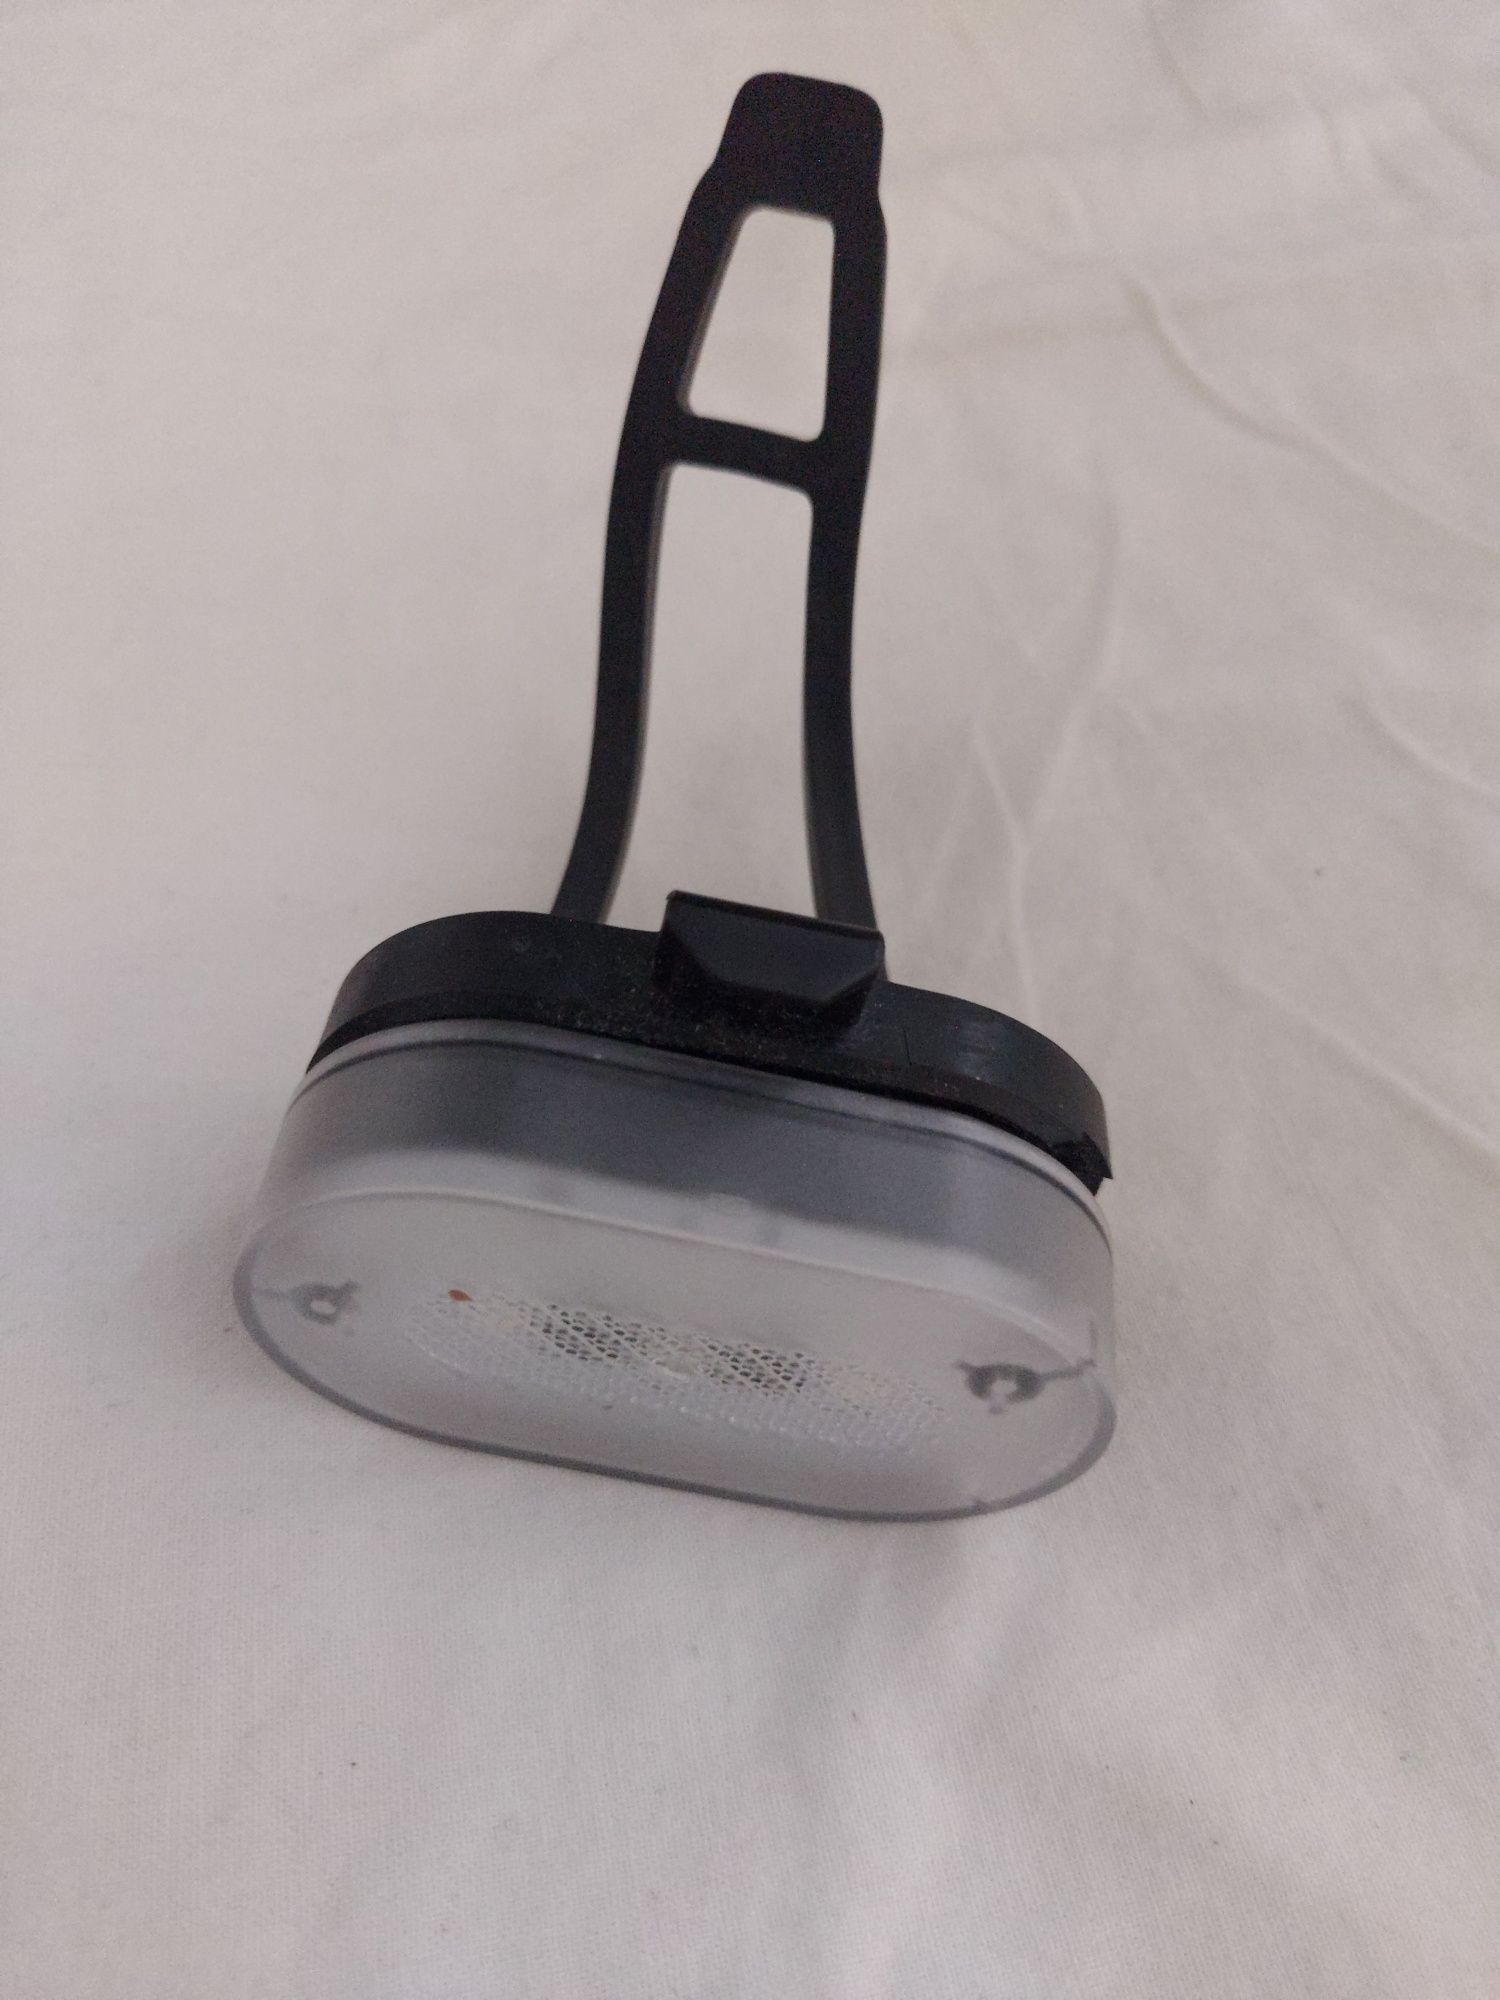 Lampka rowerowa na zatrzask przednia/tylna LED 4 tryby wodoodporna USB